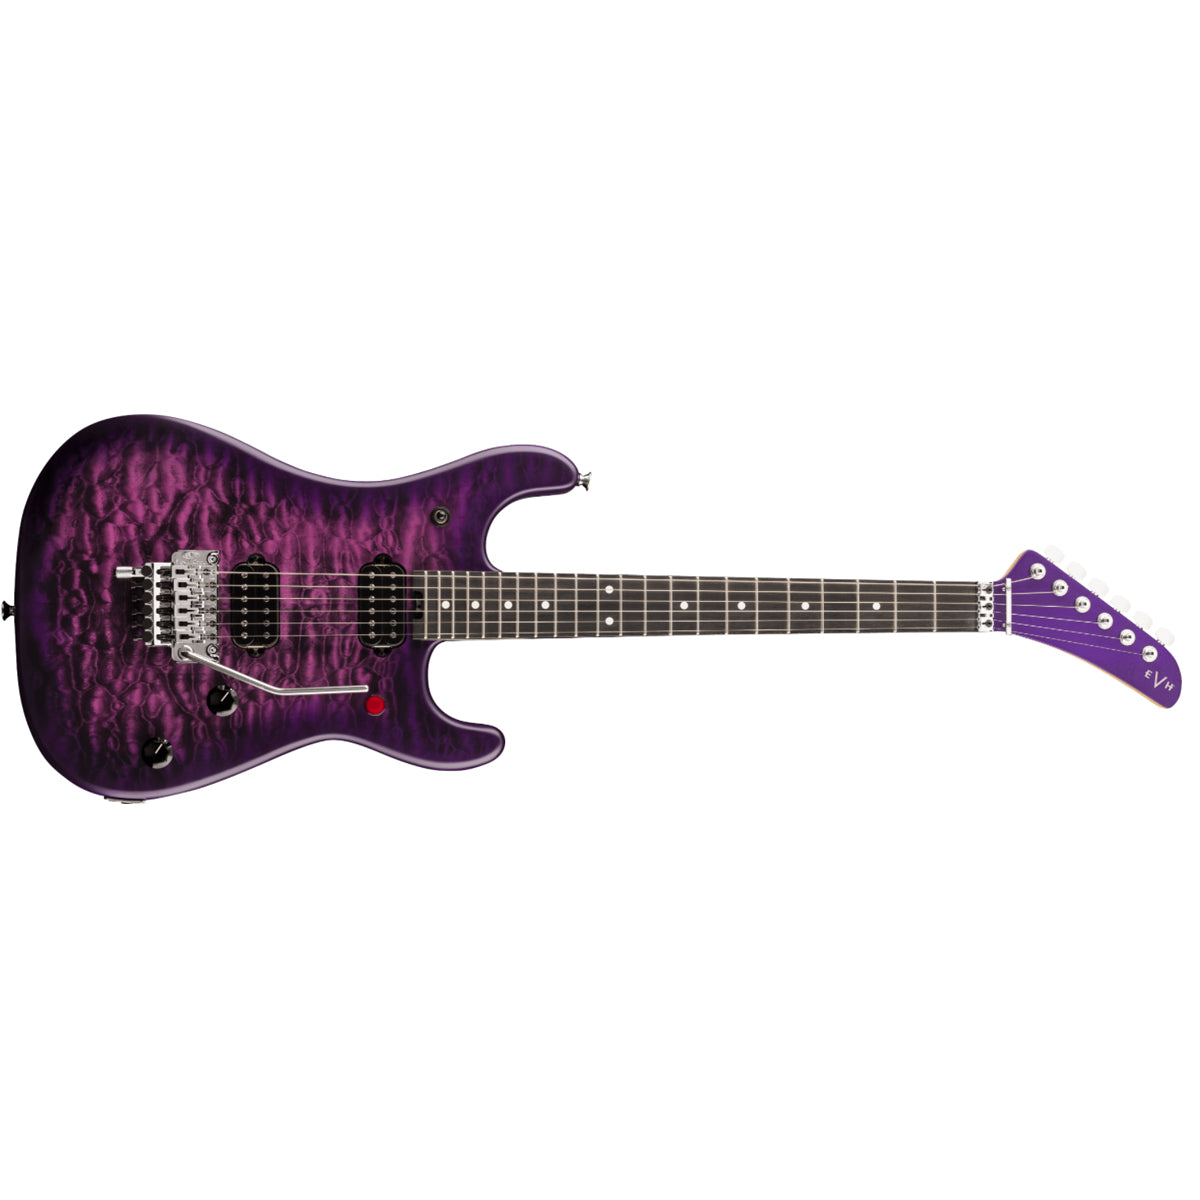 EVH 5150 Series Deluxe QM Electric Guitar Ebony Fingerboard Purple Daze - 5108002535